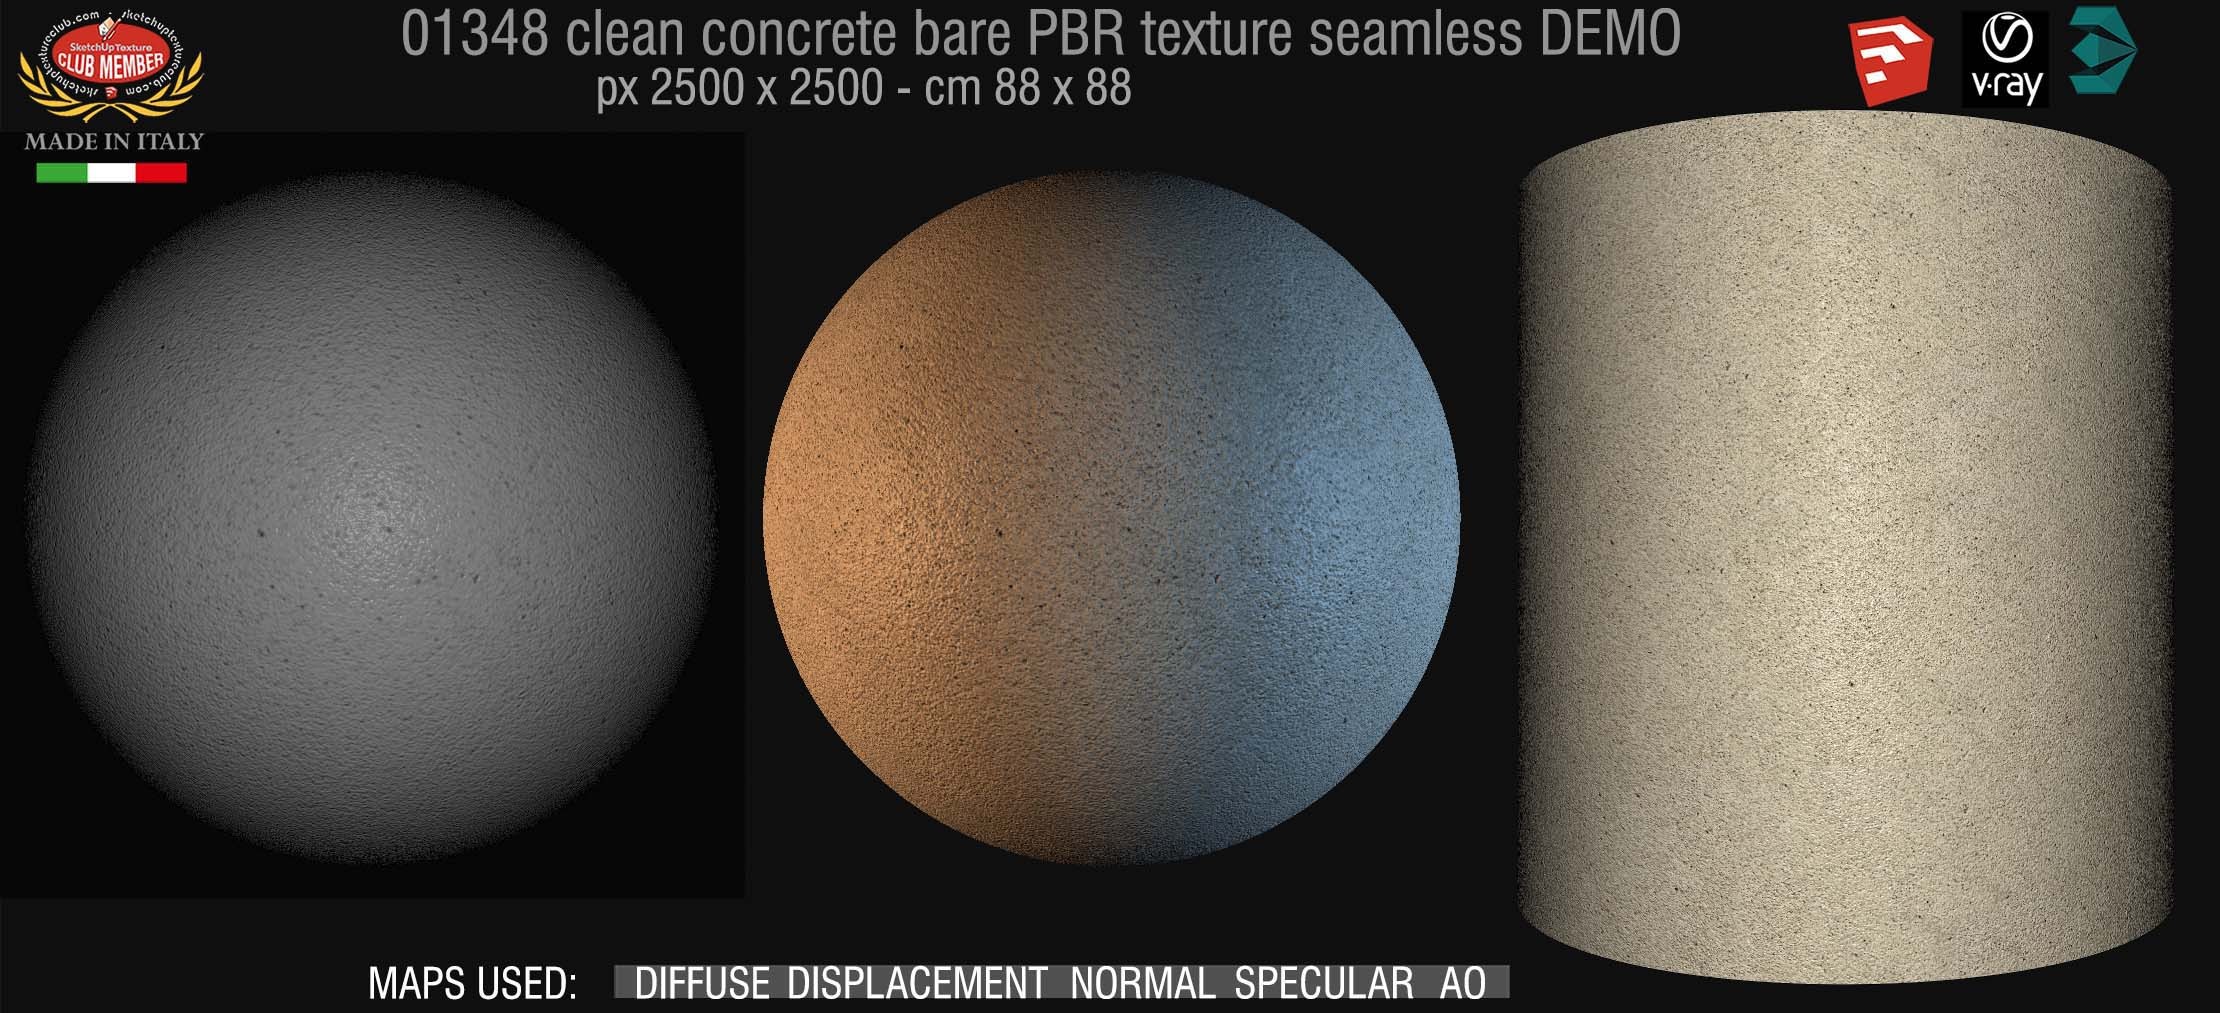 01348 concrete bare clean PBR texture seamless DEMO